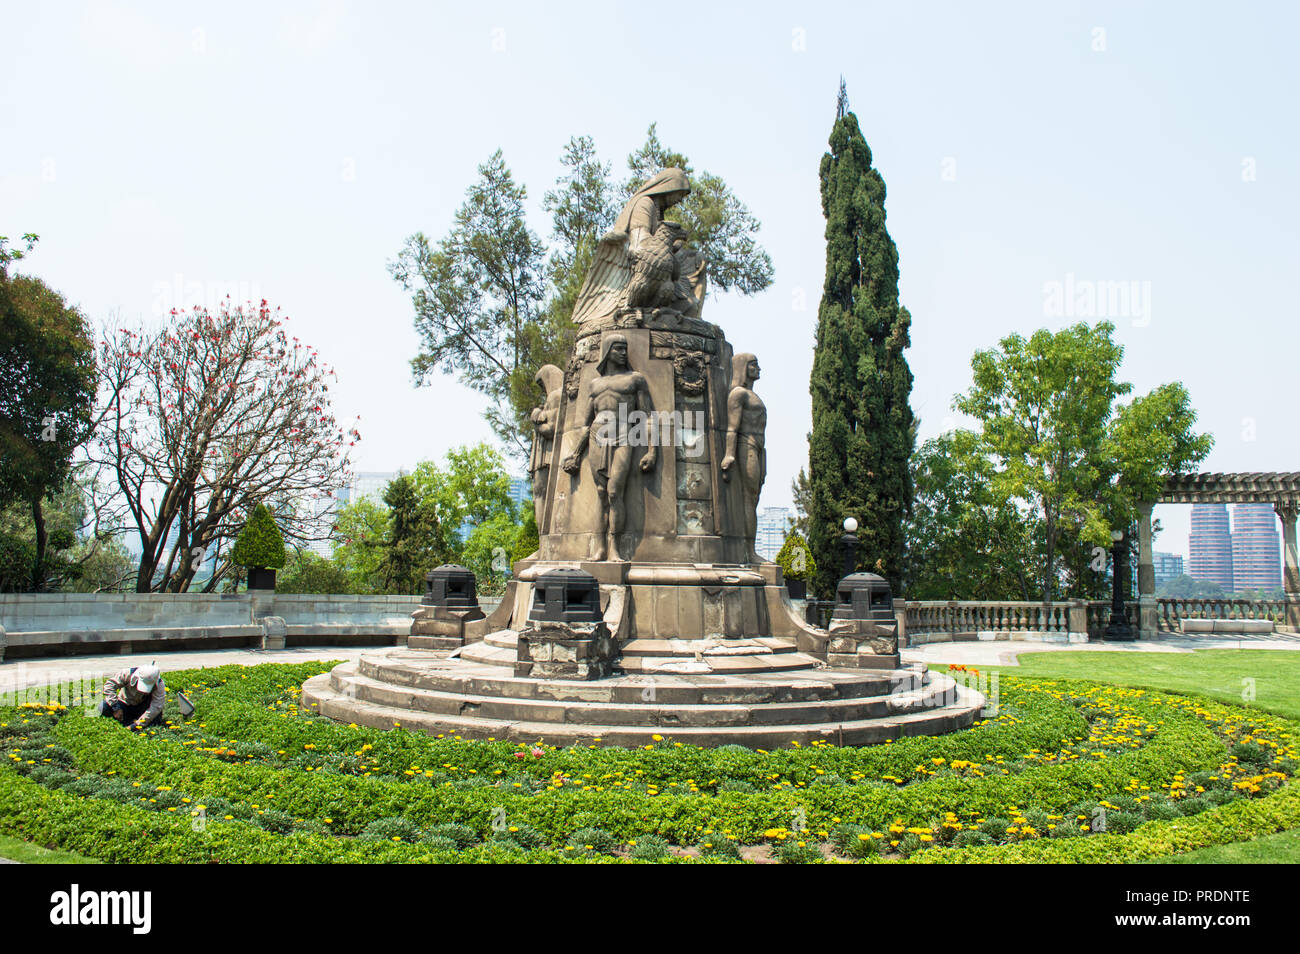 Garten und oben auf das Schloss Chapultepec, Gärtner, der seine Arbeit erledigt. Historische Skulptur in der Mitte. Stockfoto